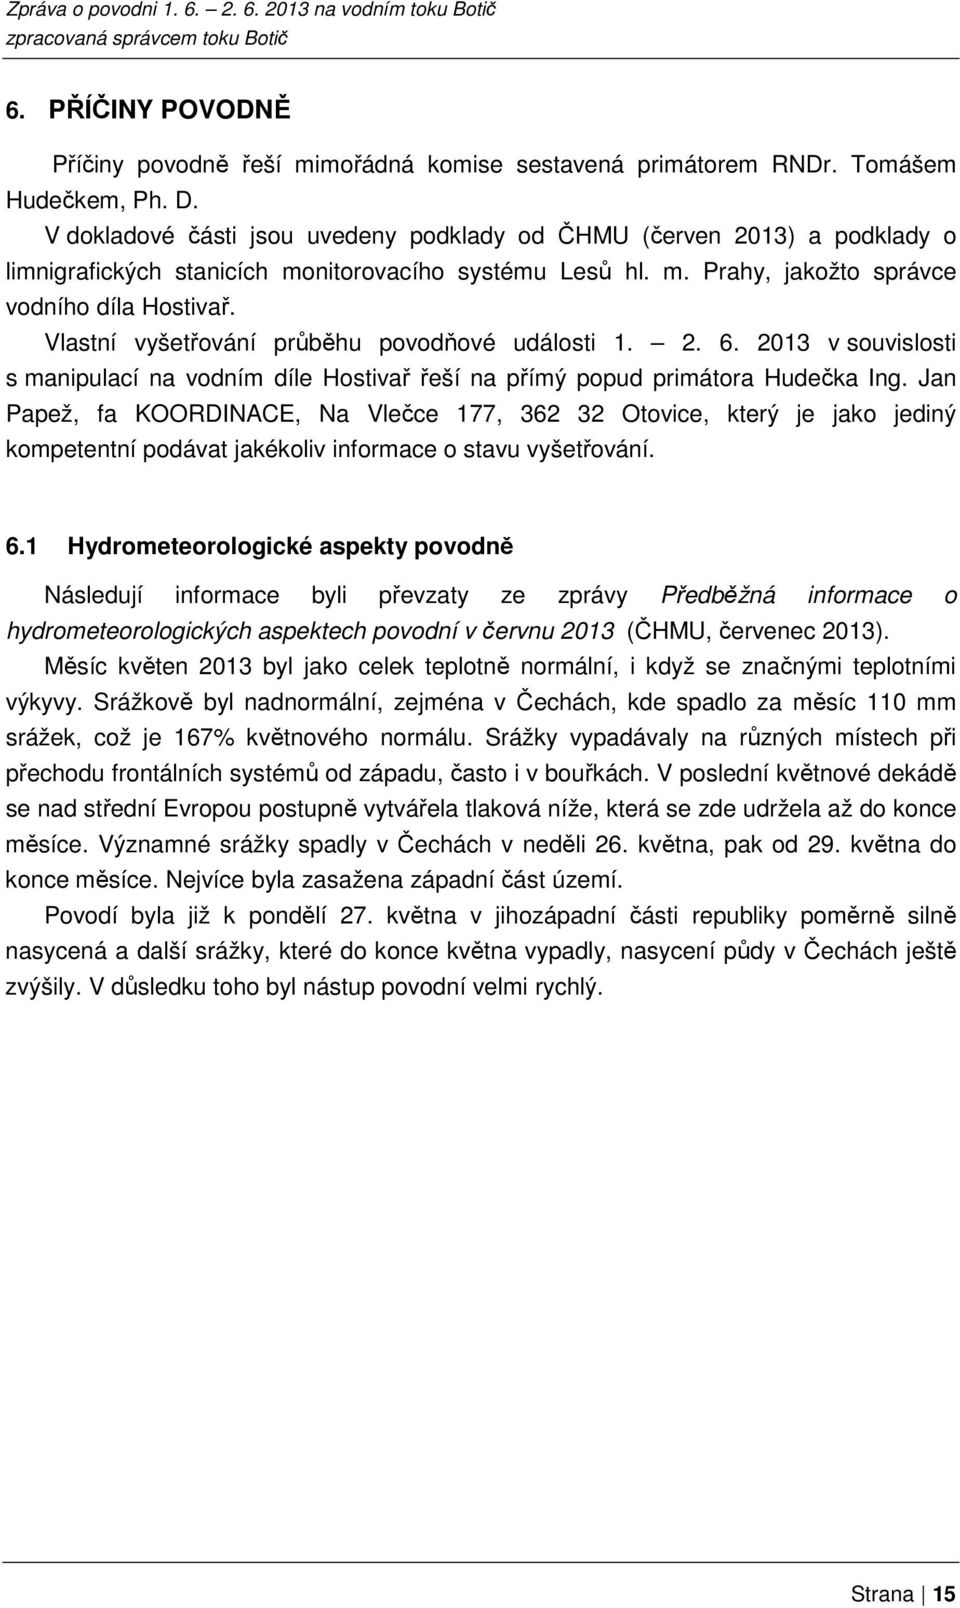 Vlastní vyšetřování průběhu povodňové události 1. 2. 6. 2013 v souvislosti s manipulací na vodním díle Hostivař řeší na přímý popud primátora Hudečka Ing.